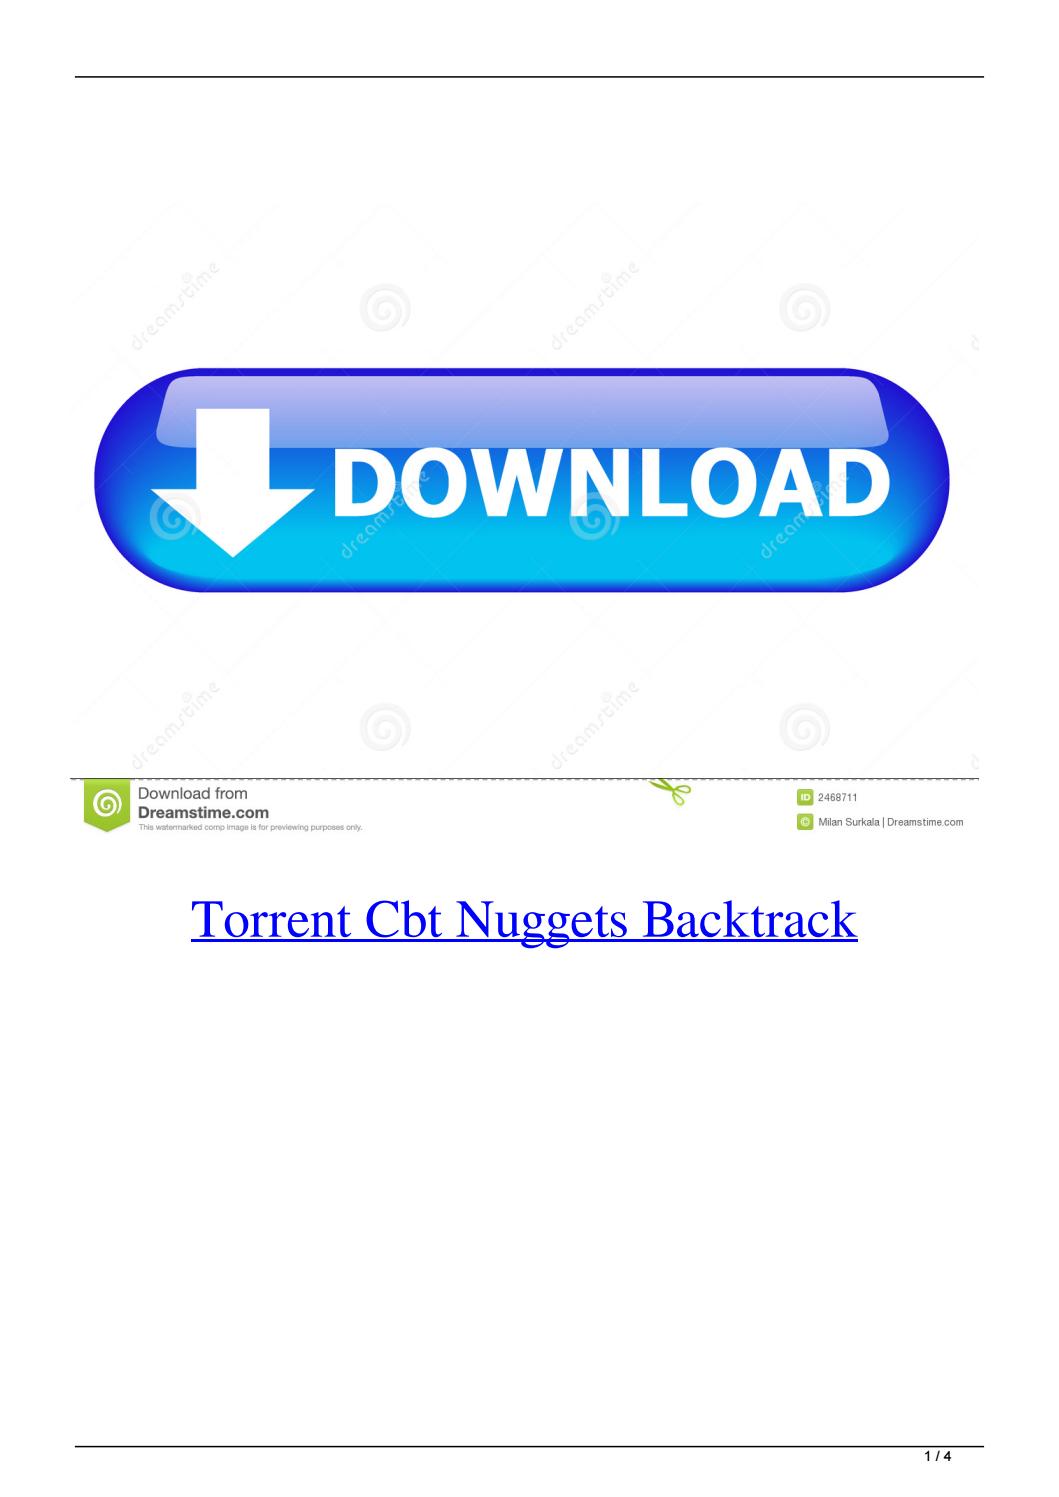 cbt nuggets downloader